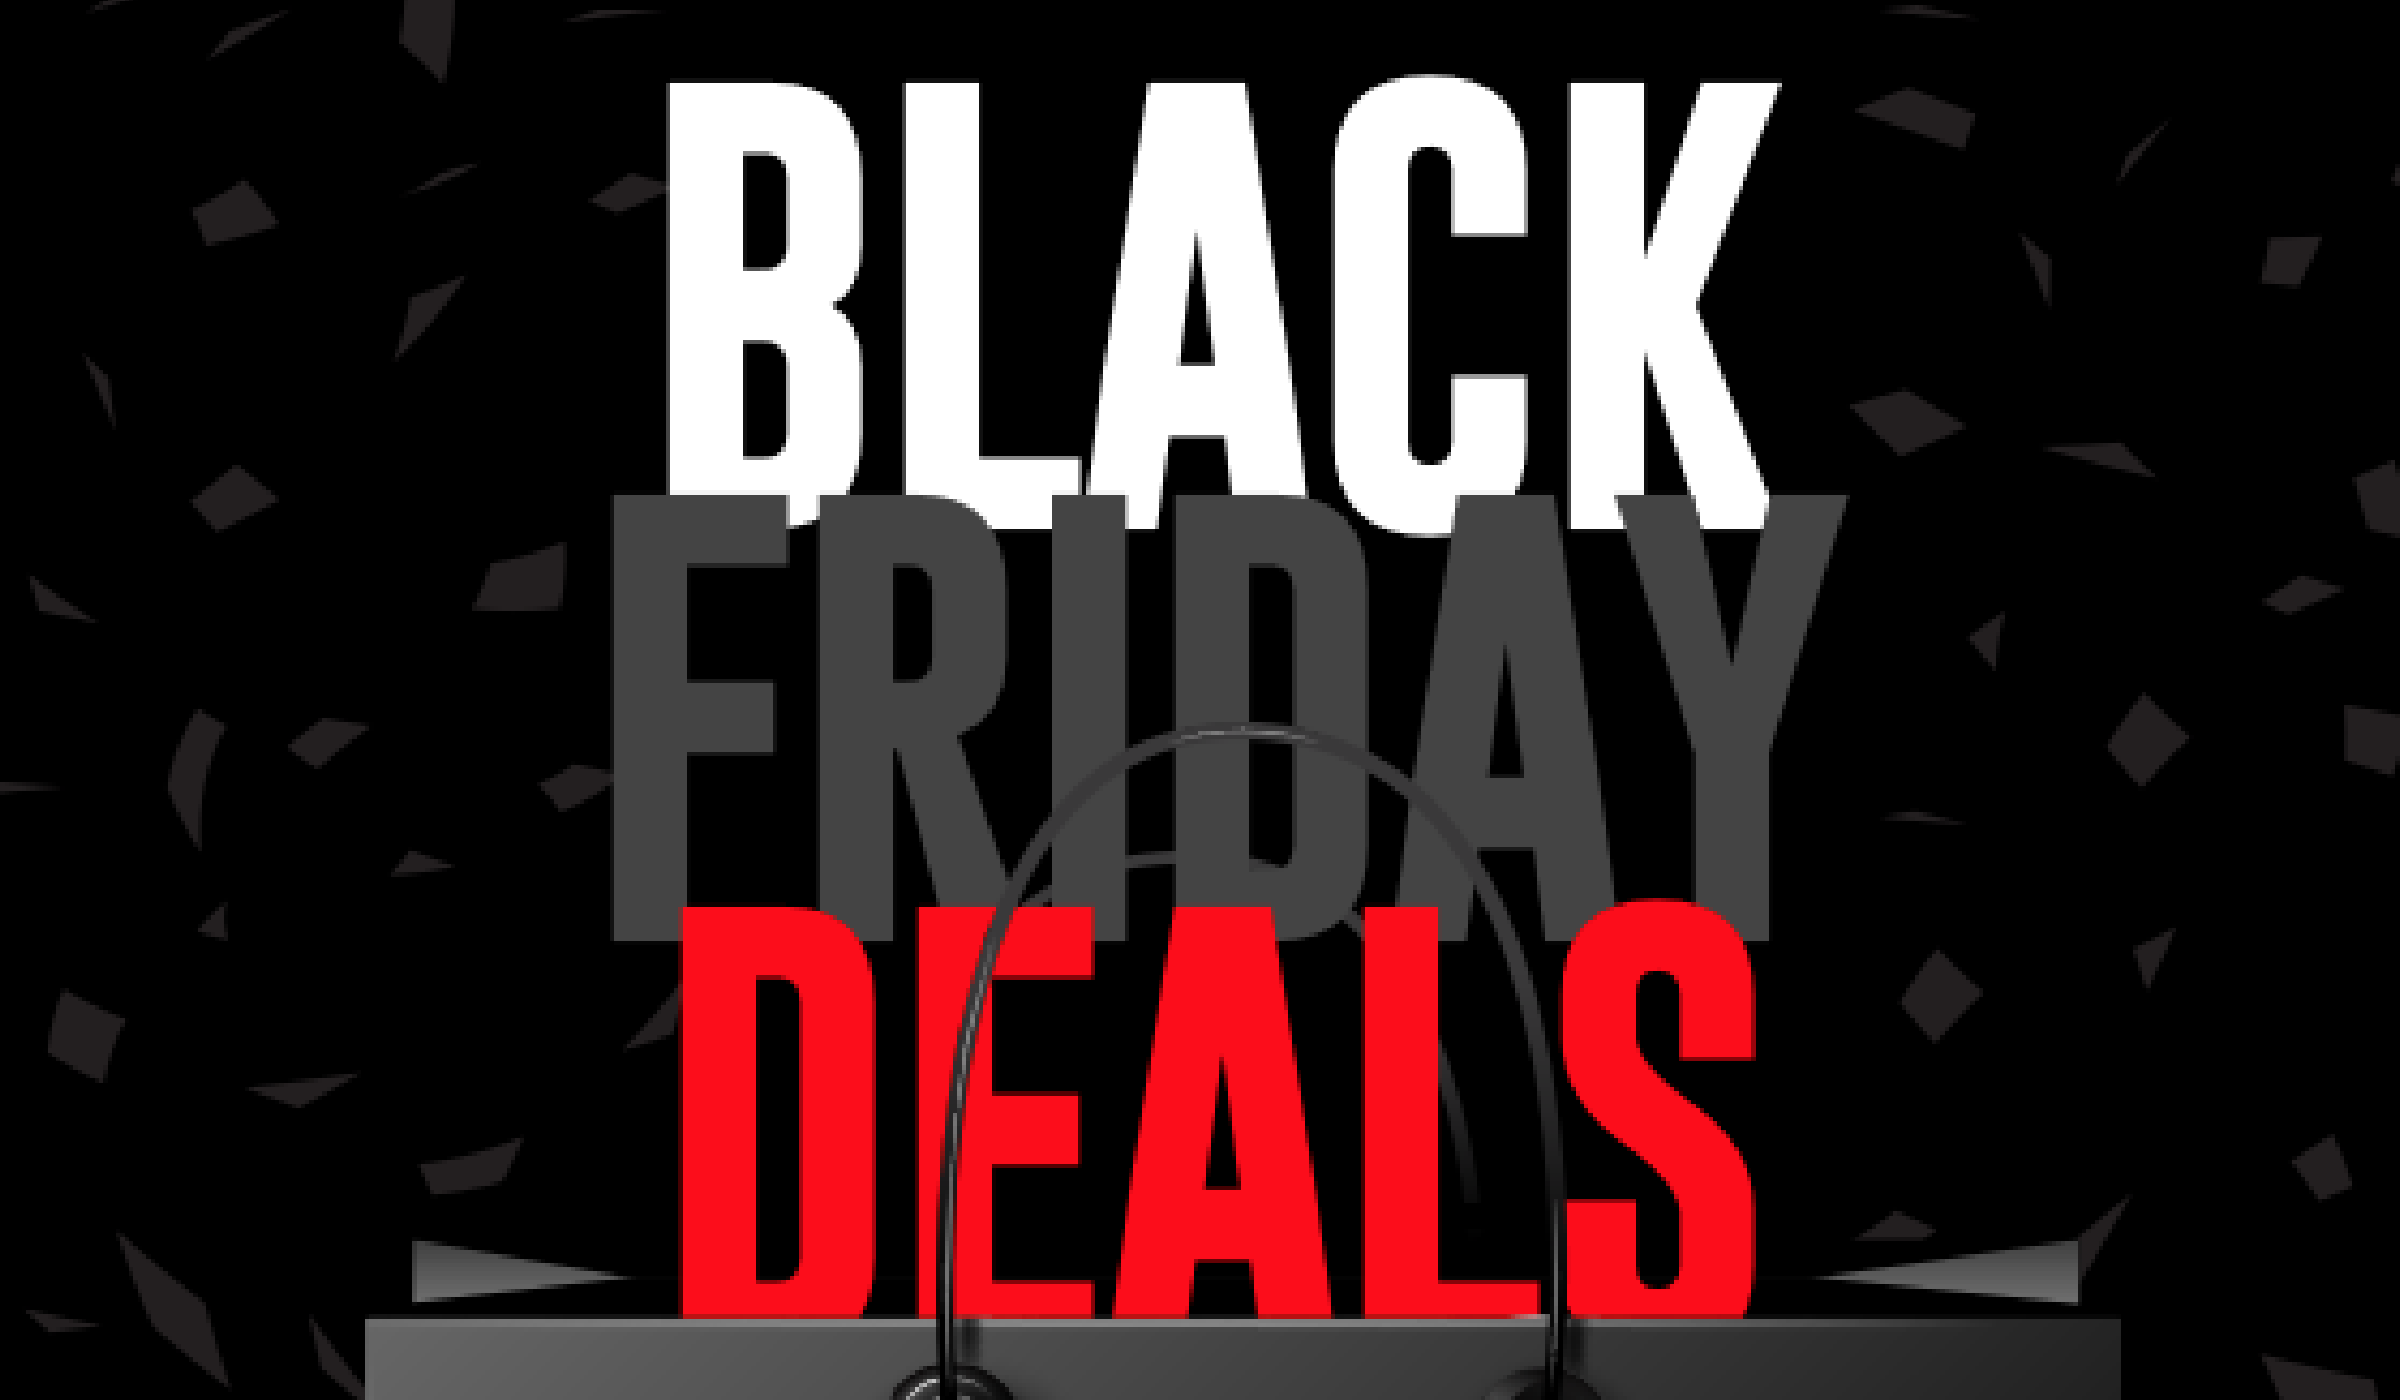 Prusa Black Friday Deals - wide 4